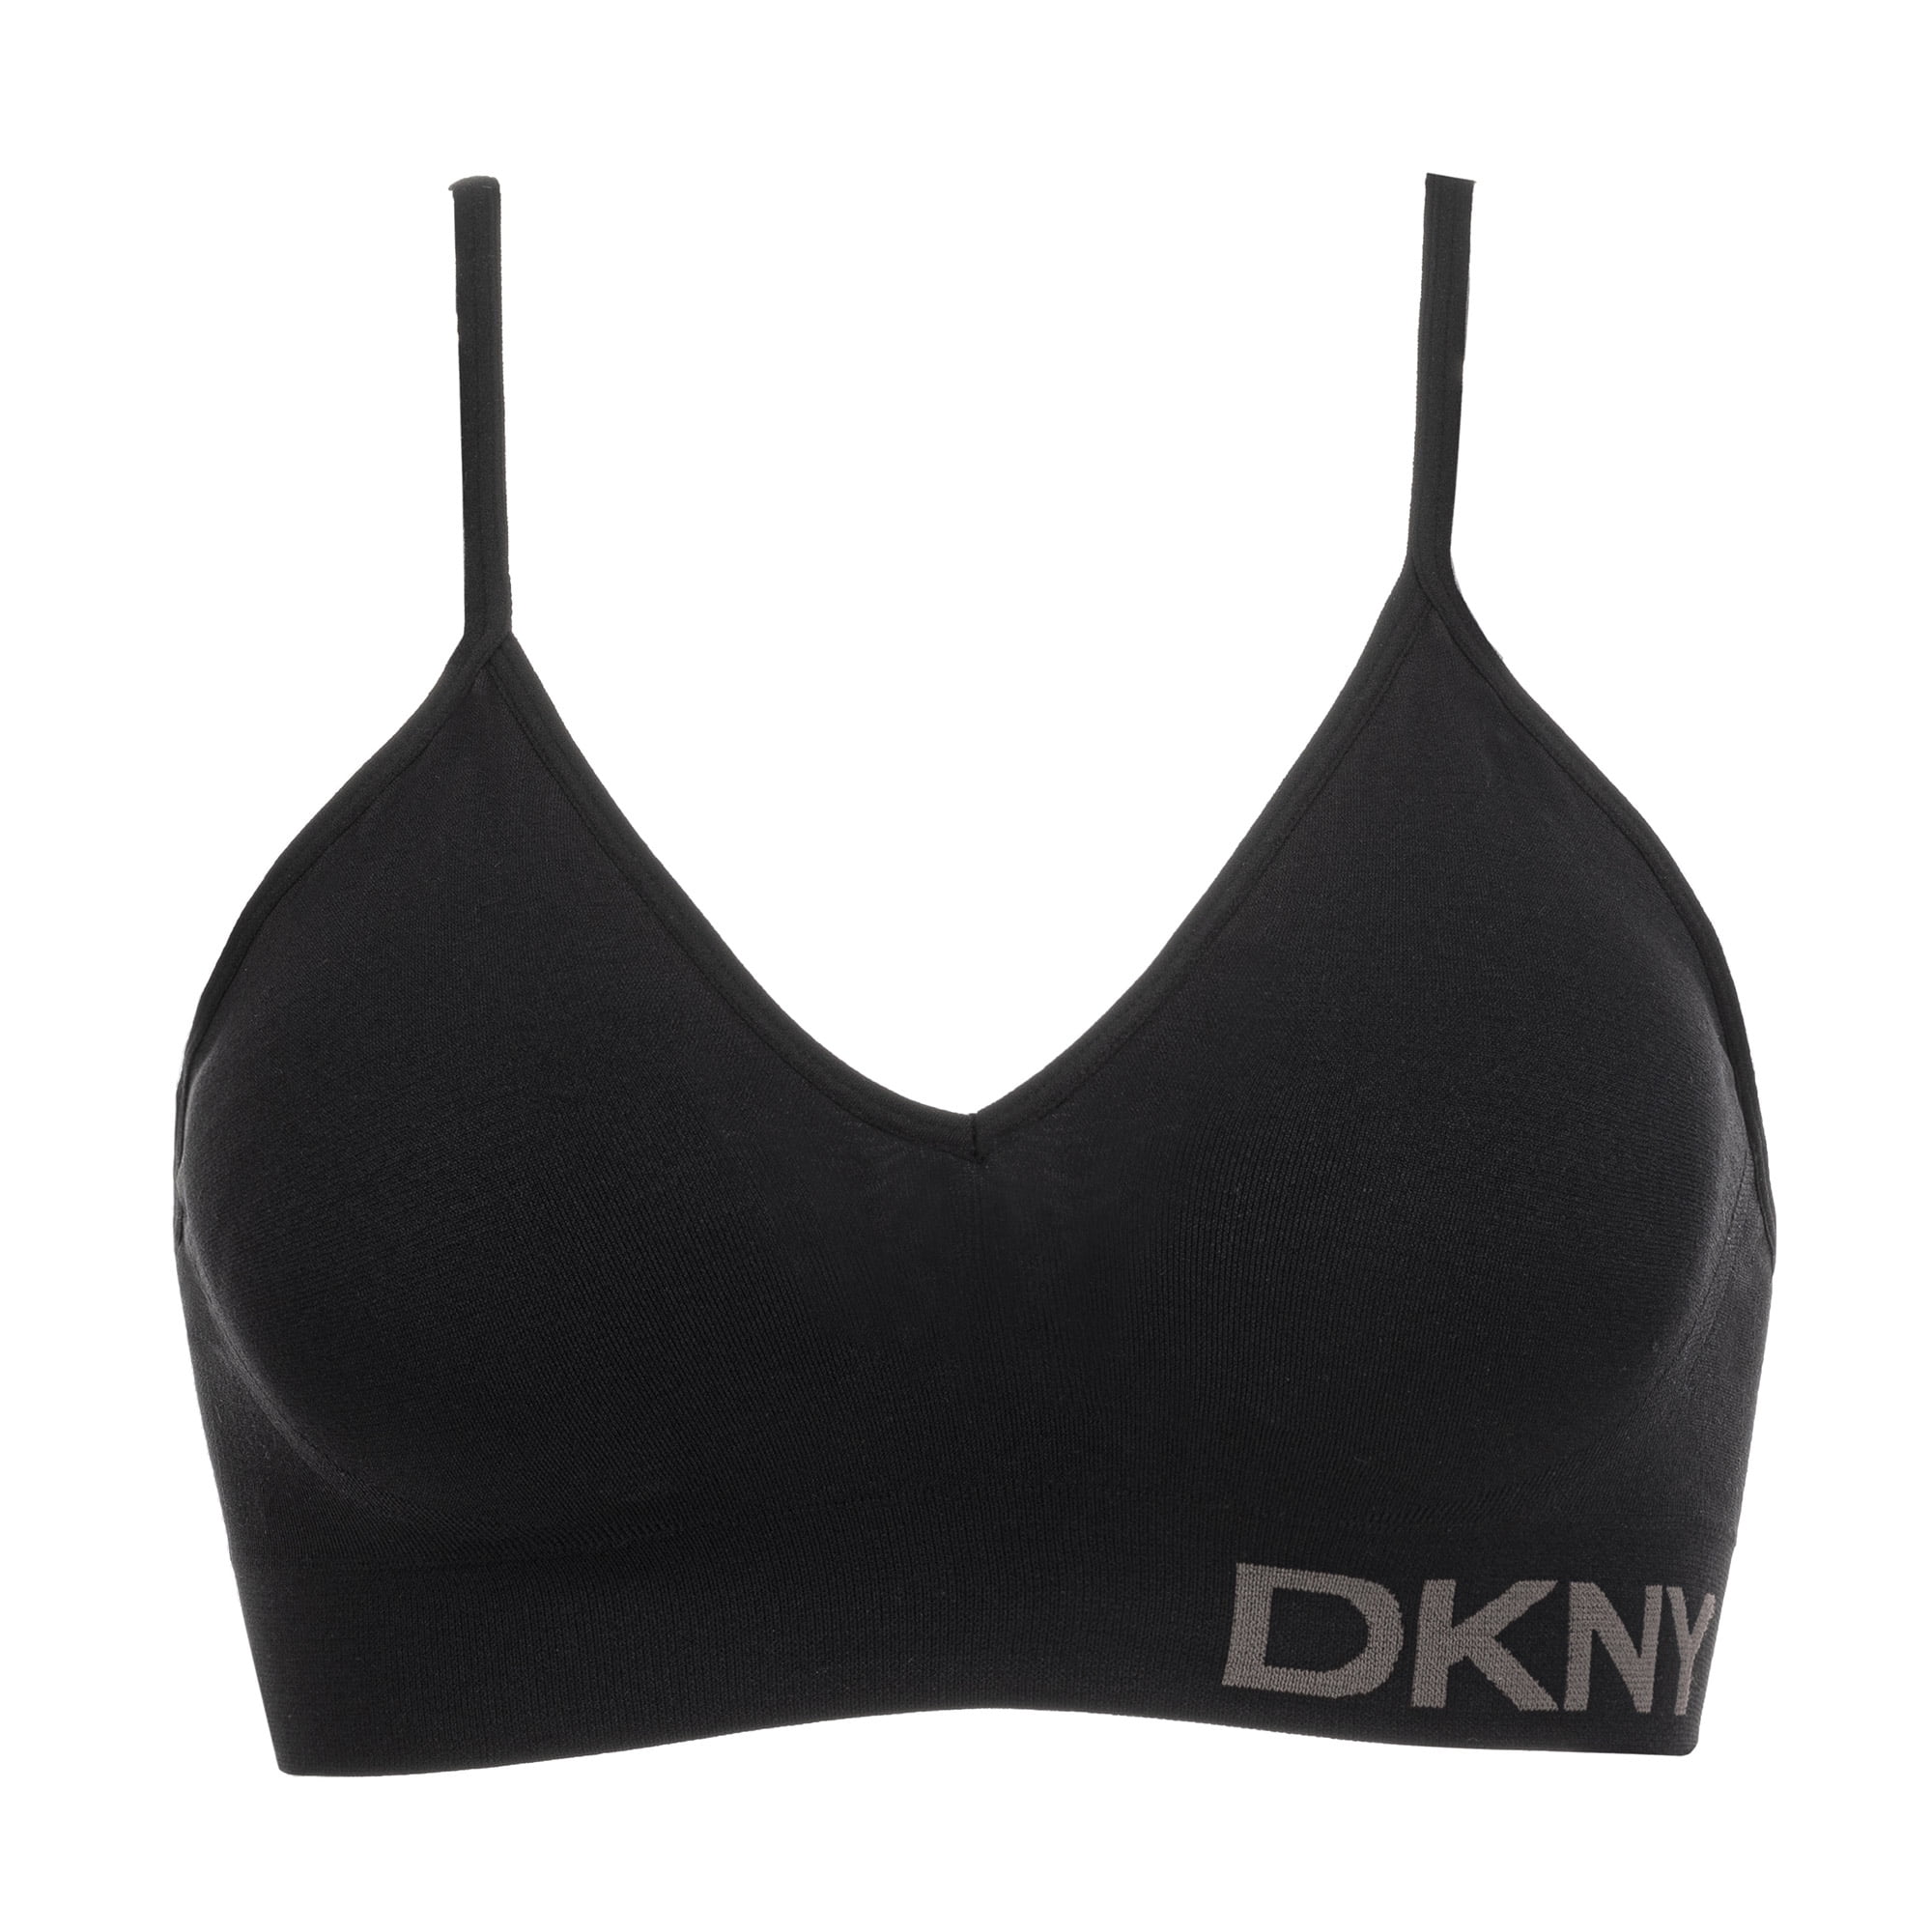 DKNY Womens Seamless Soft Stretch Wireless Bralette,Black,Medium